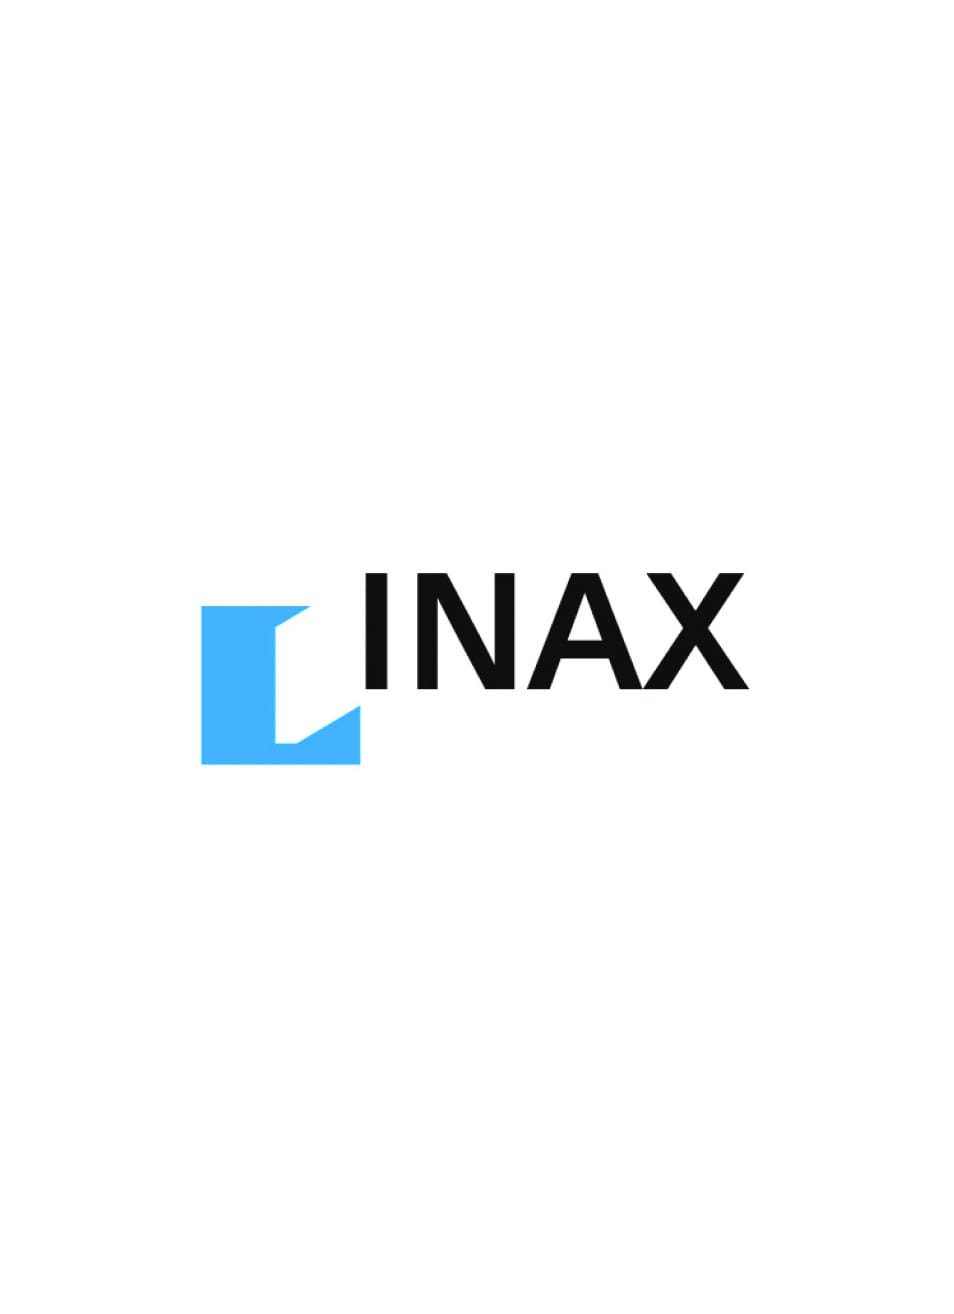 更名為INAX株式會社